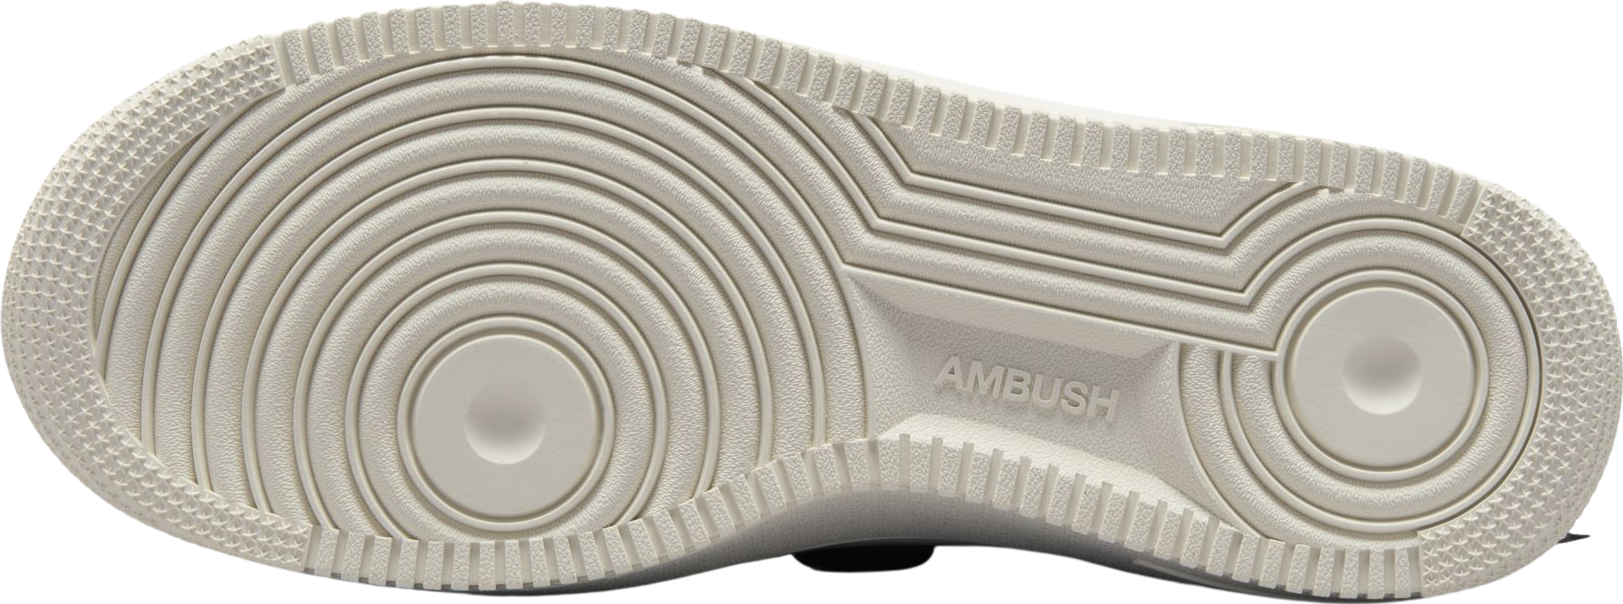 AMBUSH x Nike Air Force 1 Low Phantom